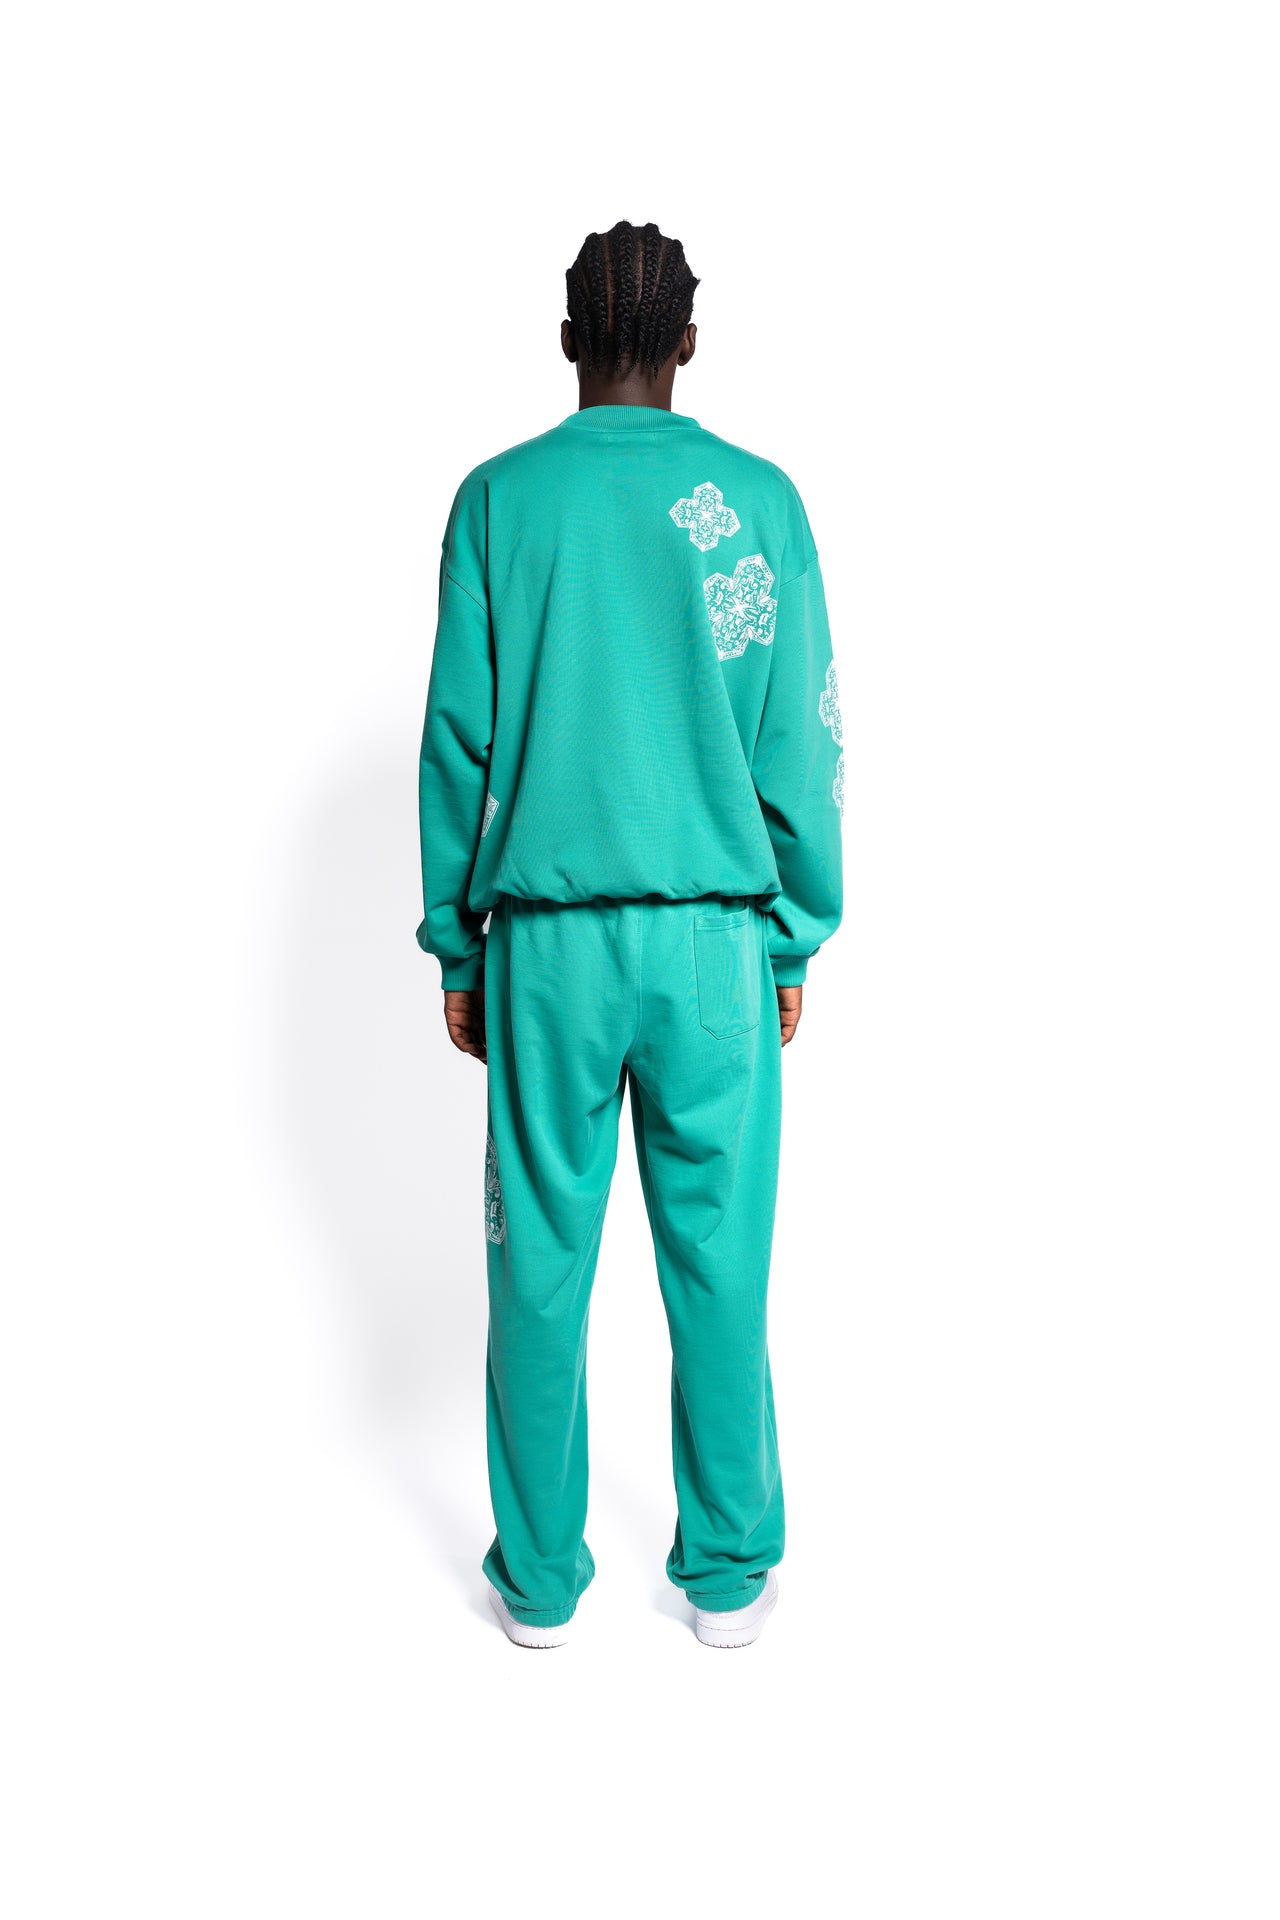 Rückansicht eines Modells in smaragdgrünen Sweatpants und passendem Sweat Shirt. Die Hosen verfügen über Taschen und ein feines, diamantähnliches Muster entlang der Seitennaht, das eine elegante Note in das Streetwear Outfit bringt.